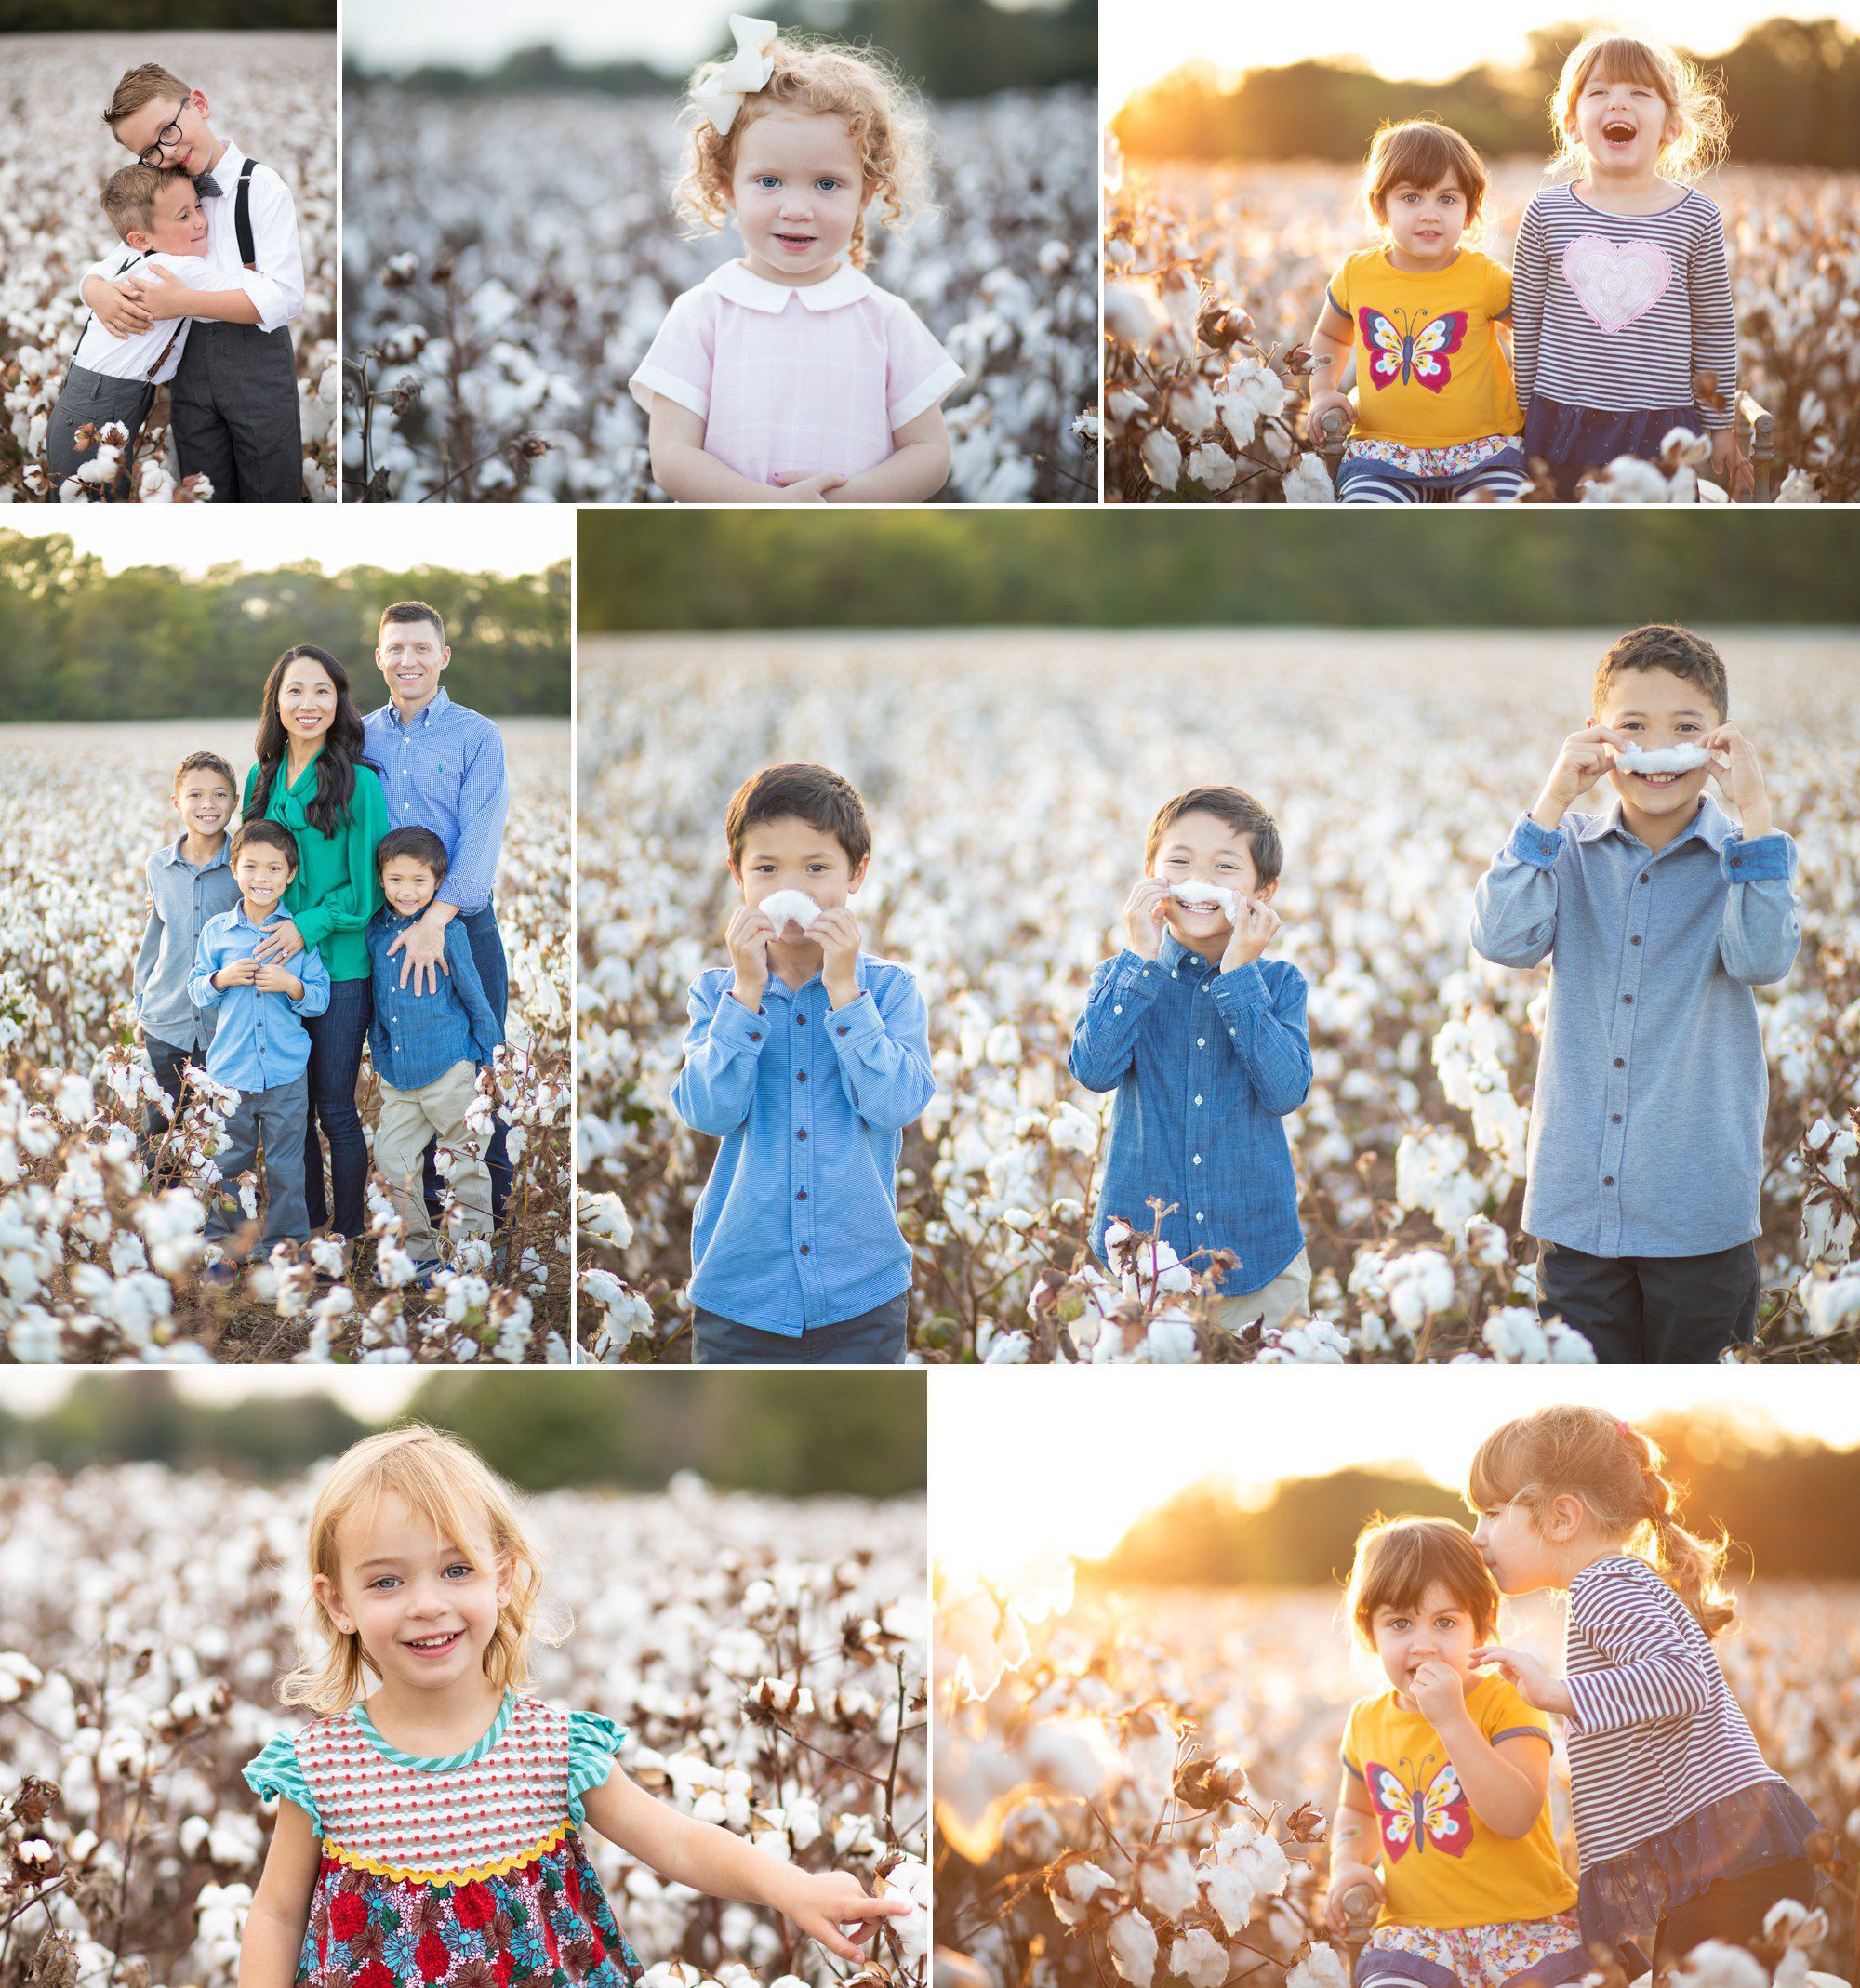 cotton field family photos nashville tn